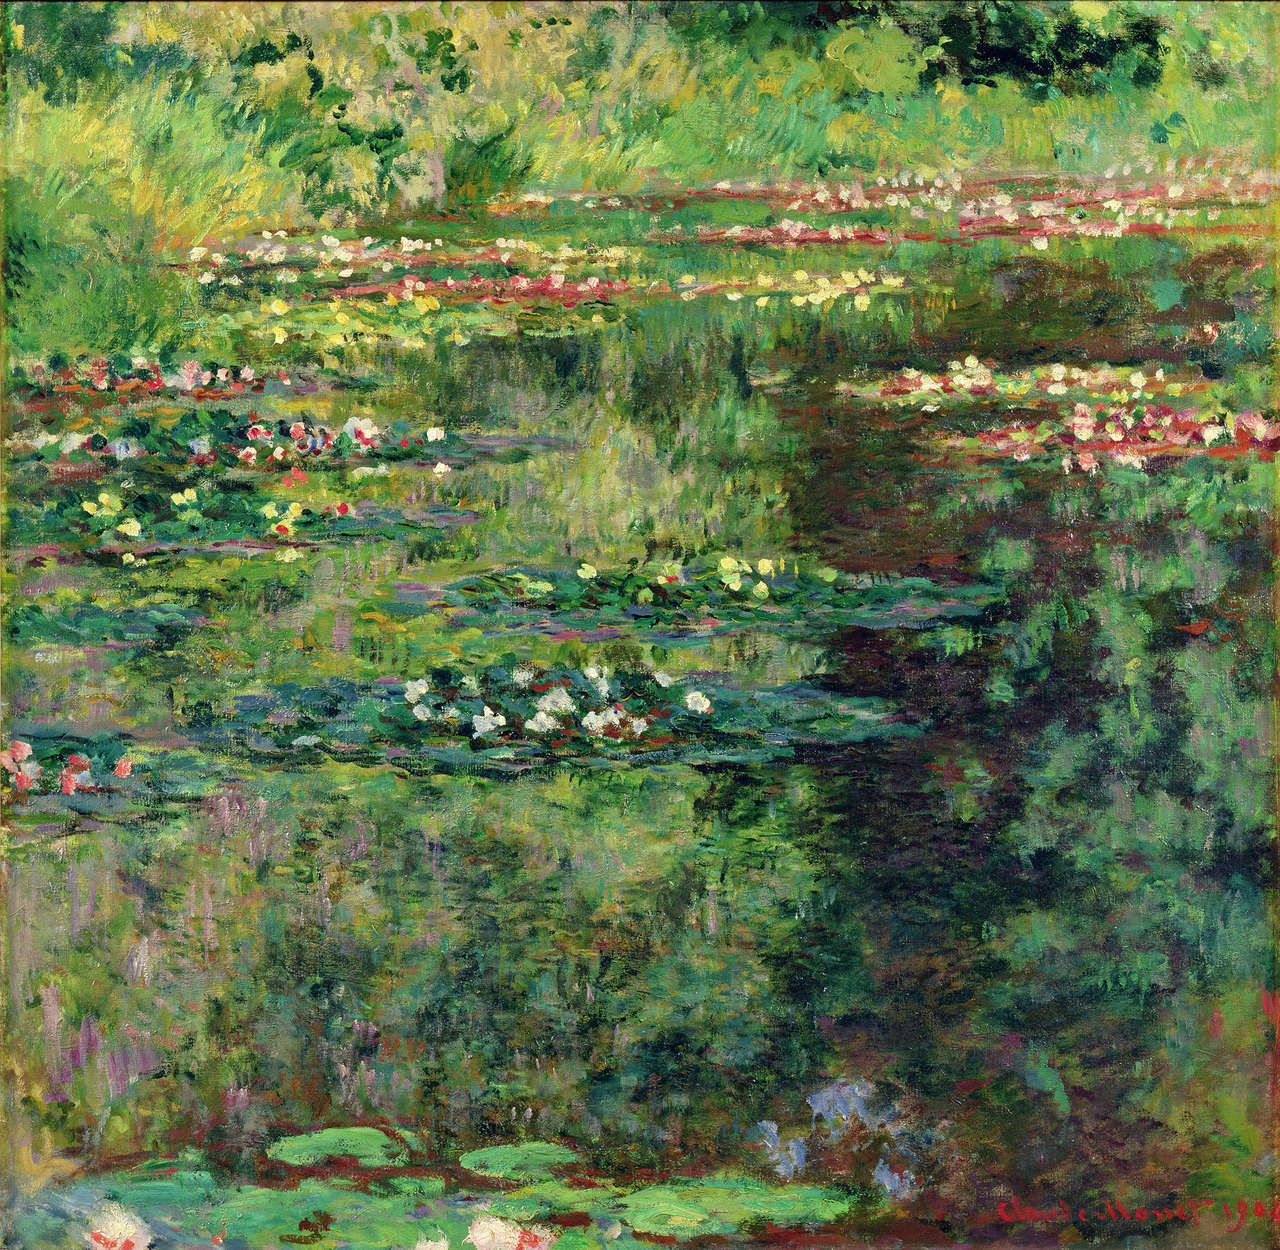             Stagno delle ninfee" di Claude Monet
        